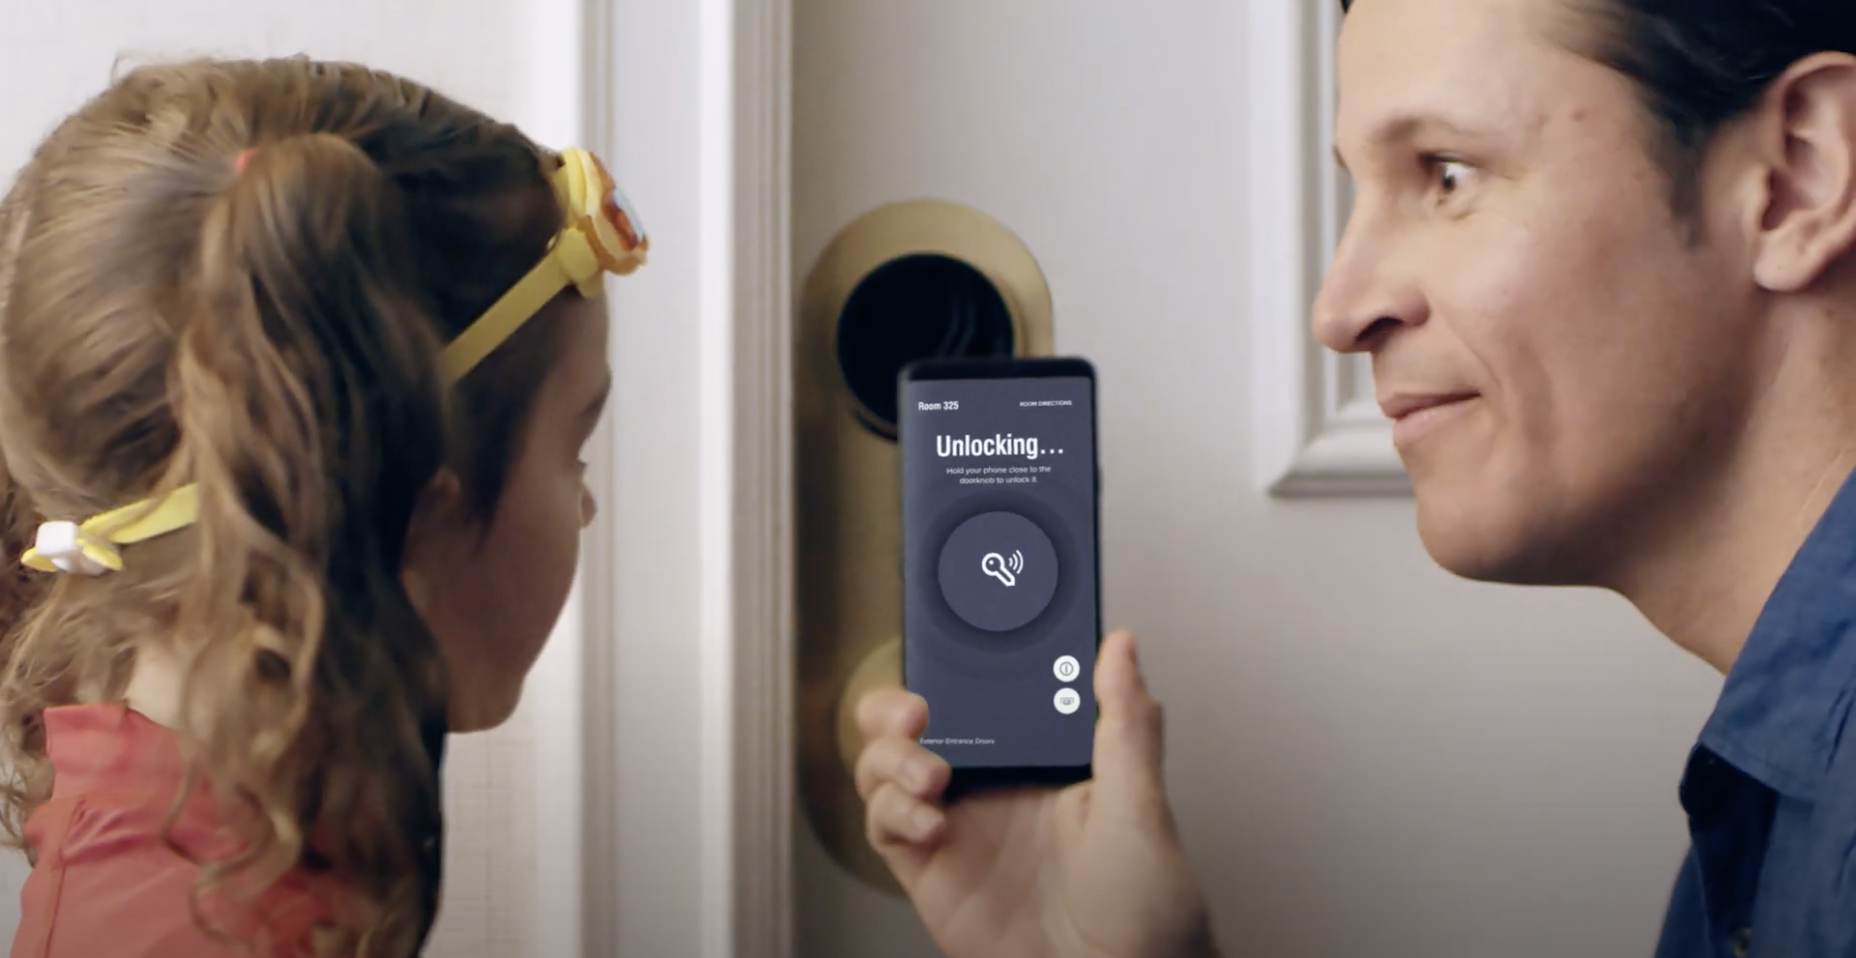 L'application Bonvoy de Marriott permet de déverrouiller les chambres d'hôtel à l'aide de clés mobiles